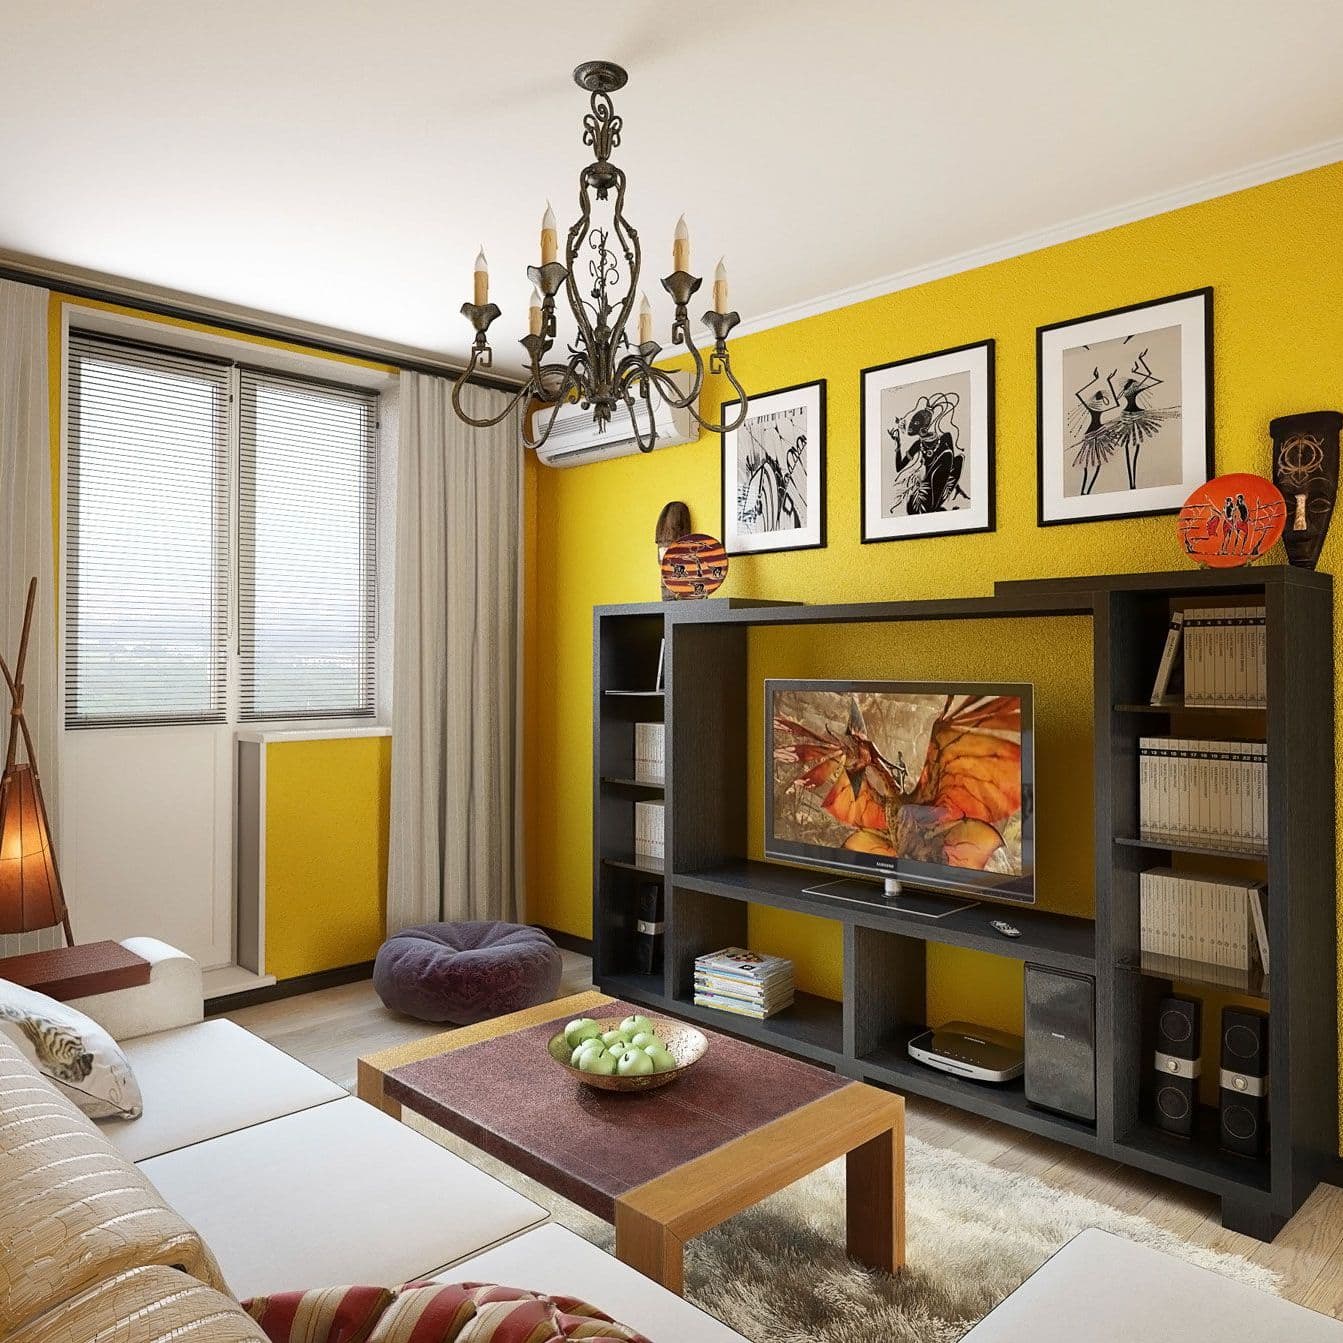 Современный интерьер гостиной с мебелью цвета венге, яркими стенами и декоративной штукатуркой